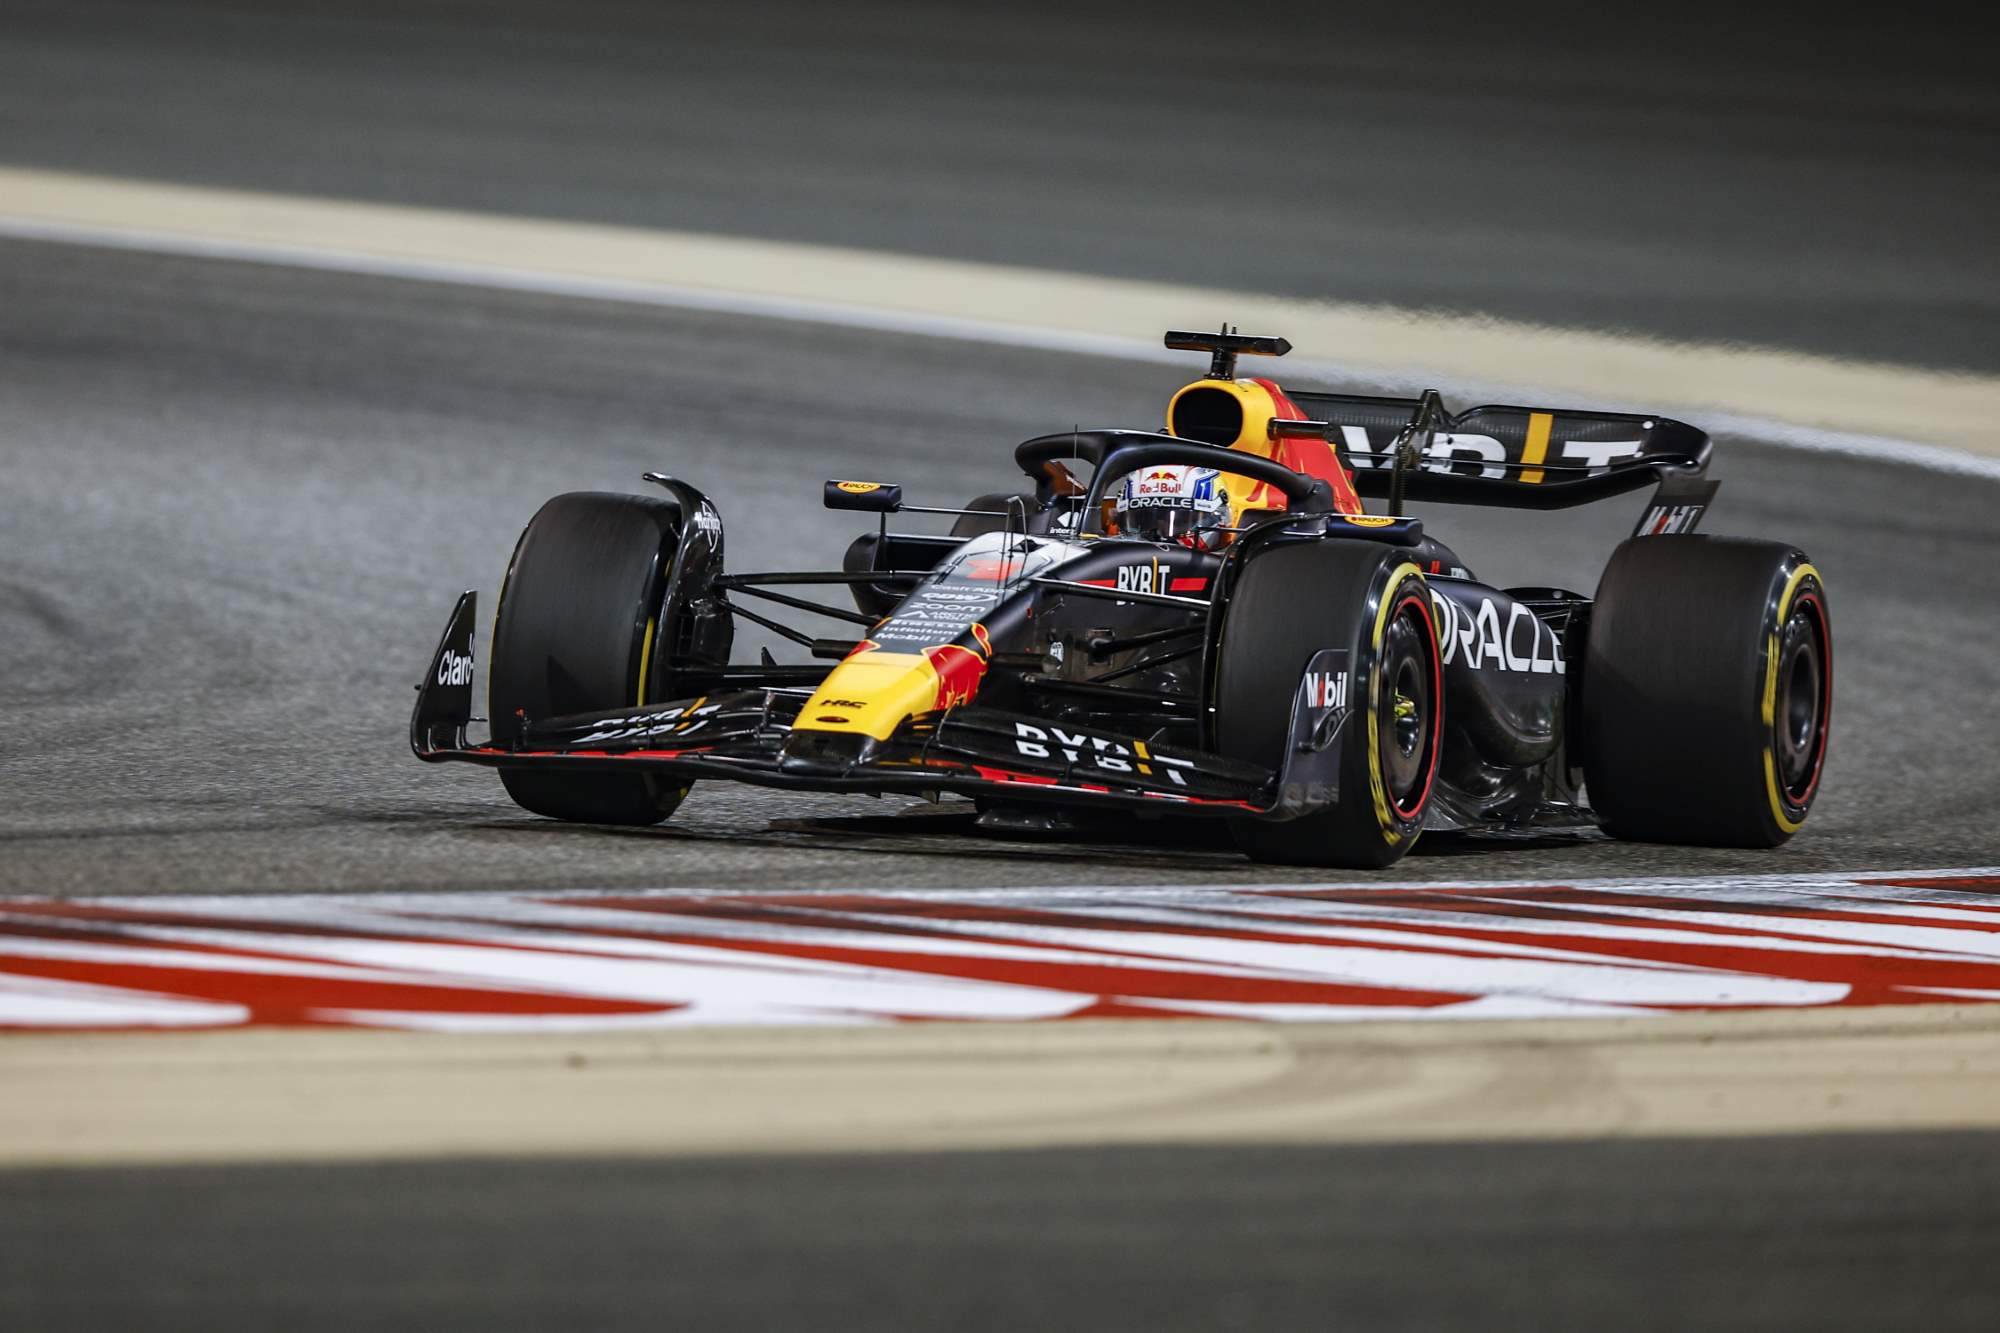 Red Bull merebut pole position dengan Perez saat Verstappen mengalami masalah teknis